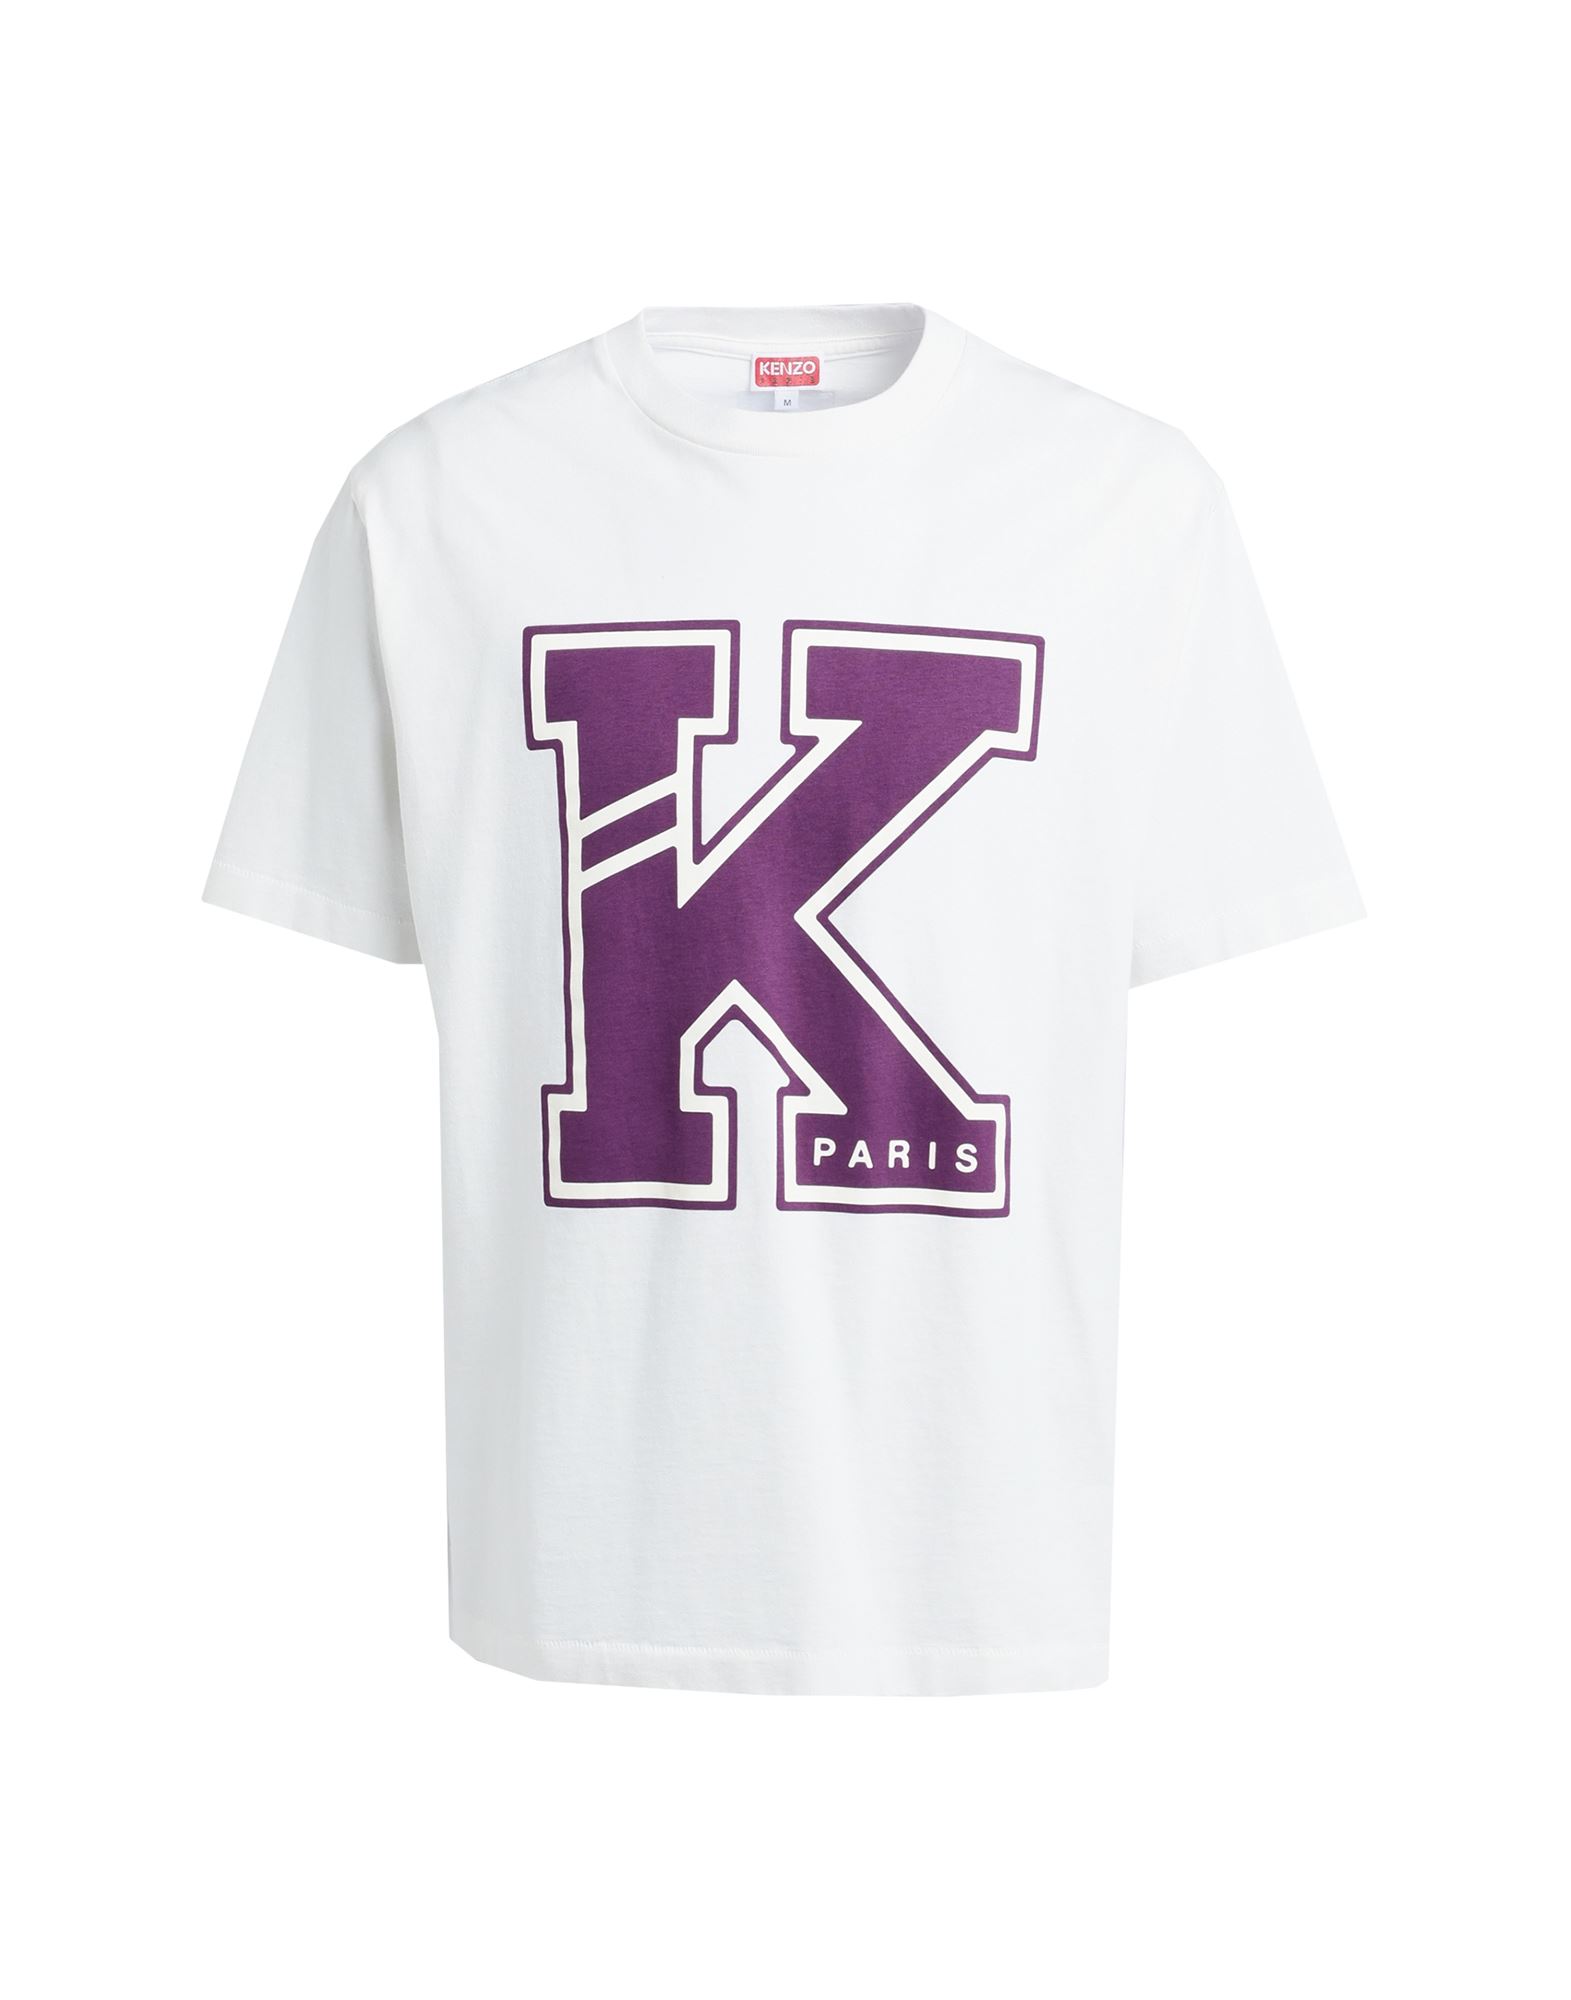 Shop Kenzo Man T-shirt White Size L Cotton